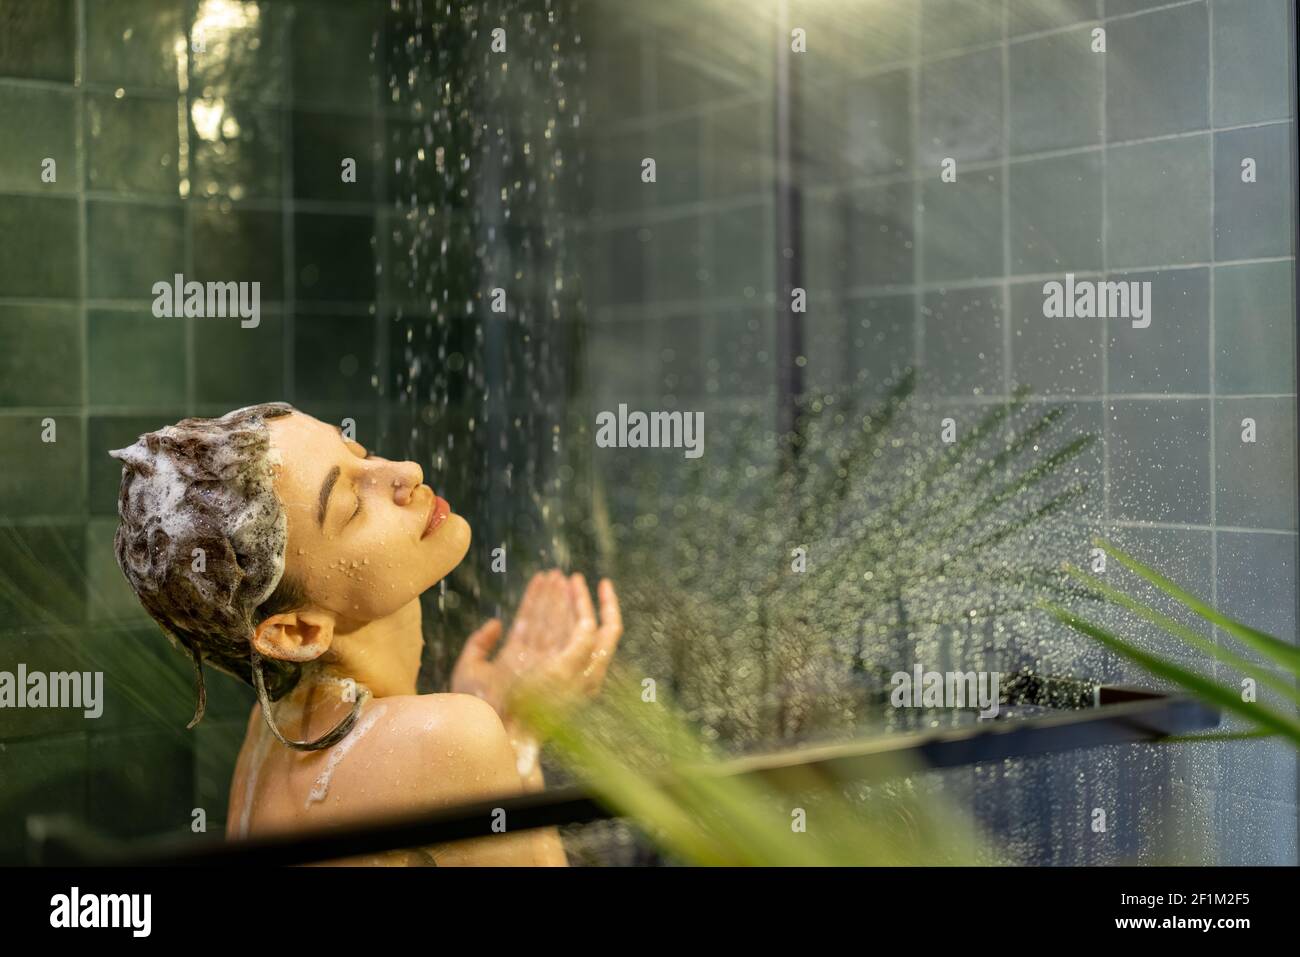 La donna che si ferma nella doccia applica lo shampoo con acqua che gocciola accanto alla parete di vetro. Prendere la doccia e rilassarsi sotto l'acqua corrente calda nel verde fresco bagno design. Spazio di copia. Foto Stock